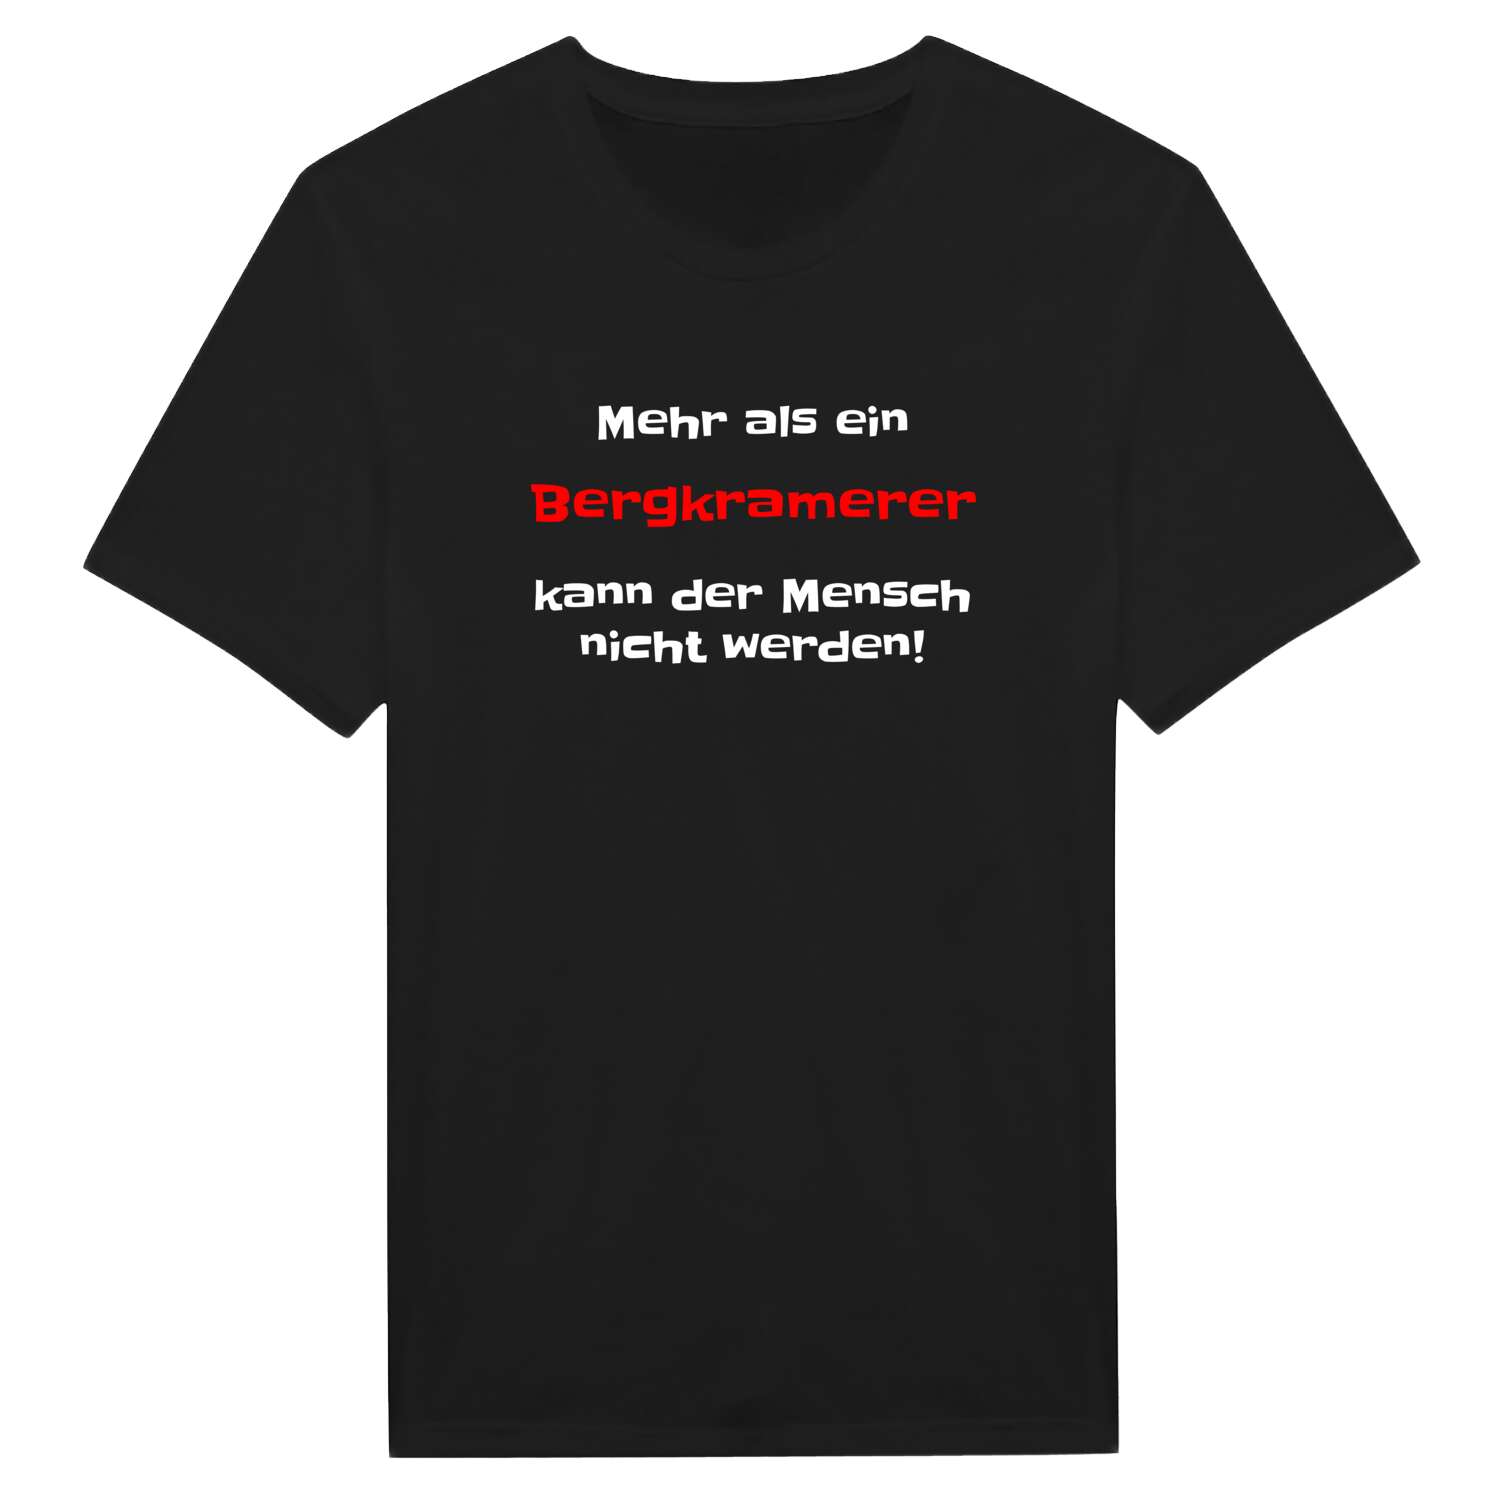 Bergkramer T-Shirt »Mehr als ein«